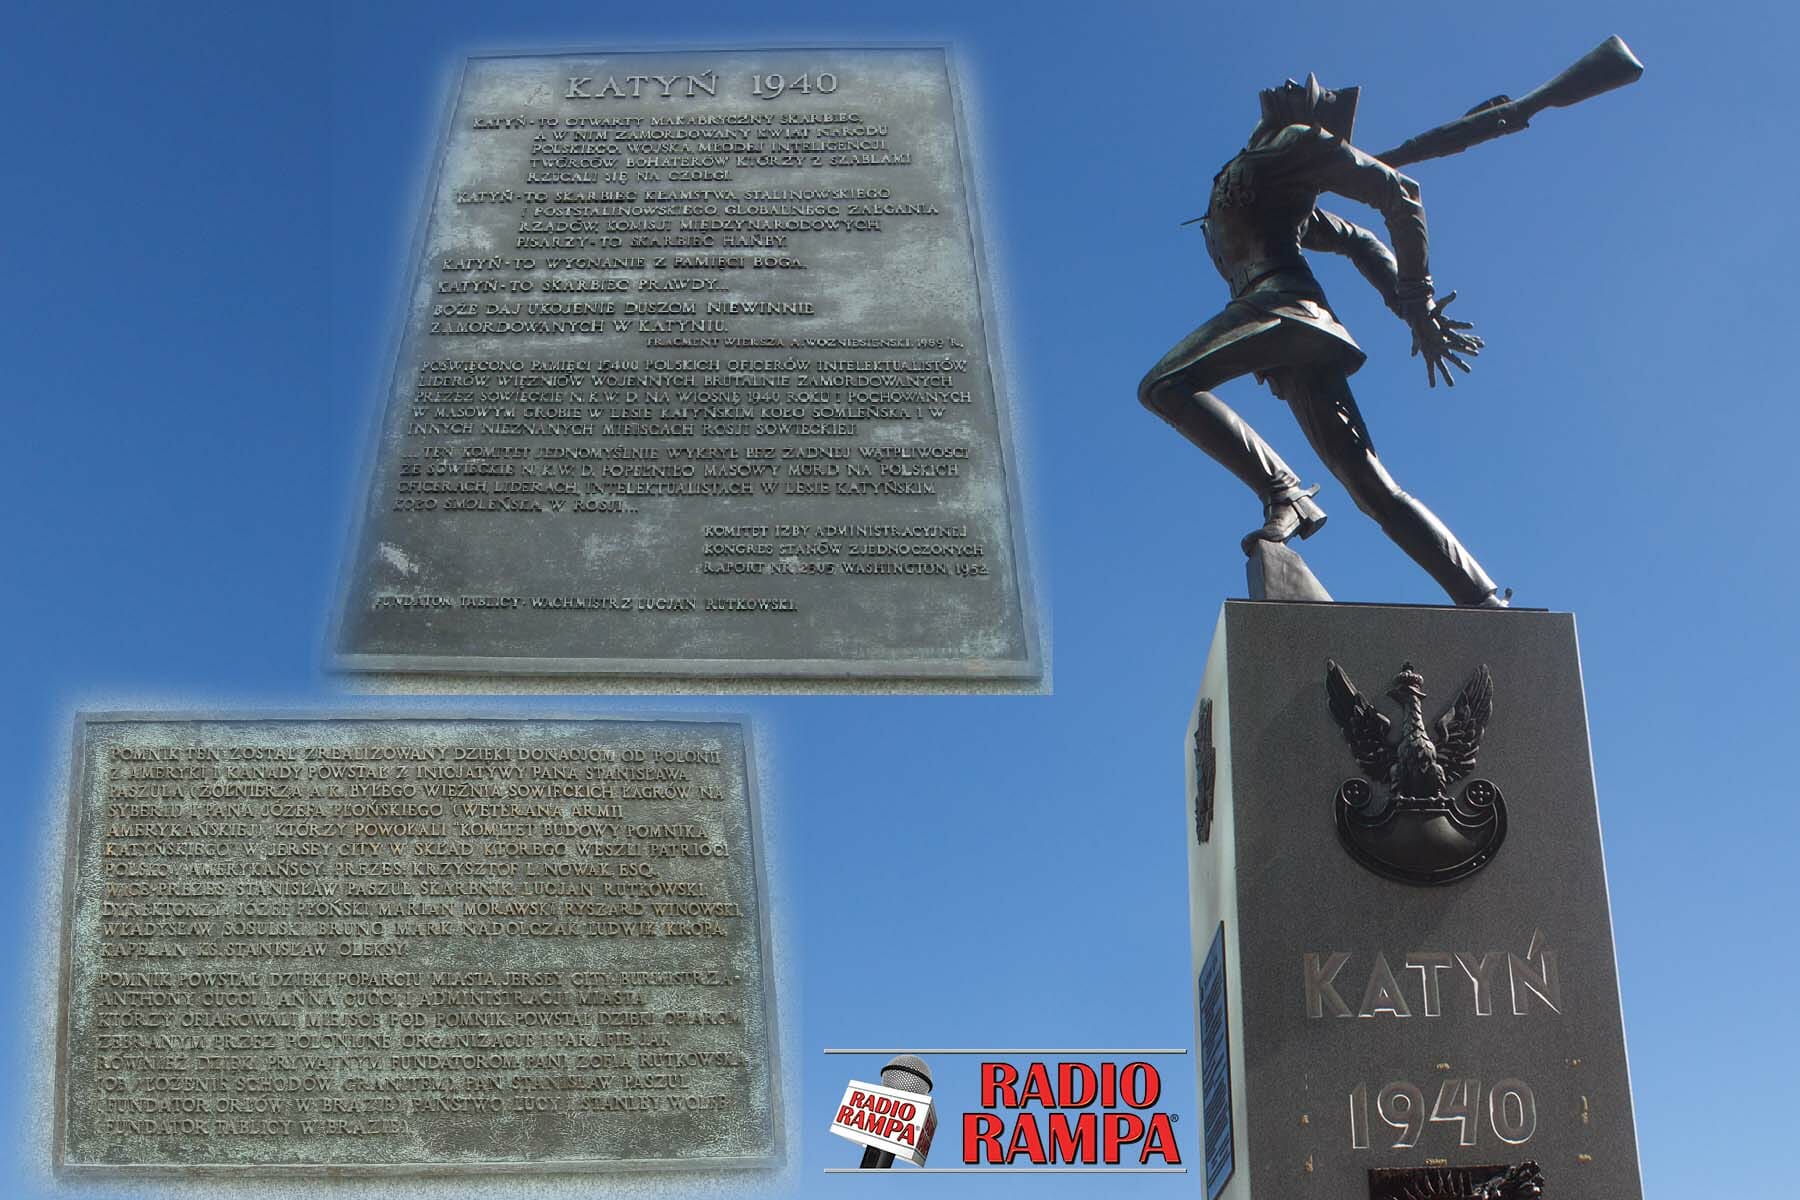 Prezes Komitetu Pomnika Katyńskiego o akcji Polonii przeciwko usunięciu pomnika z Exchange Place w Jersey City